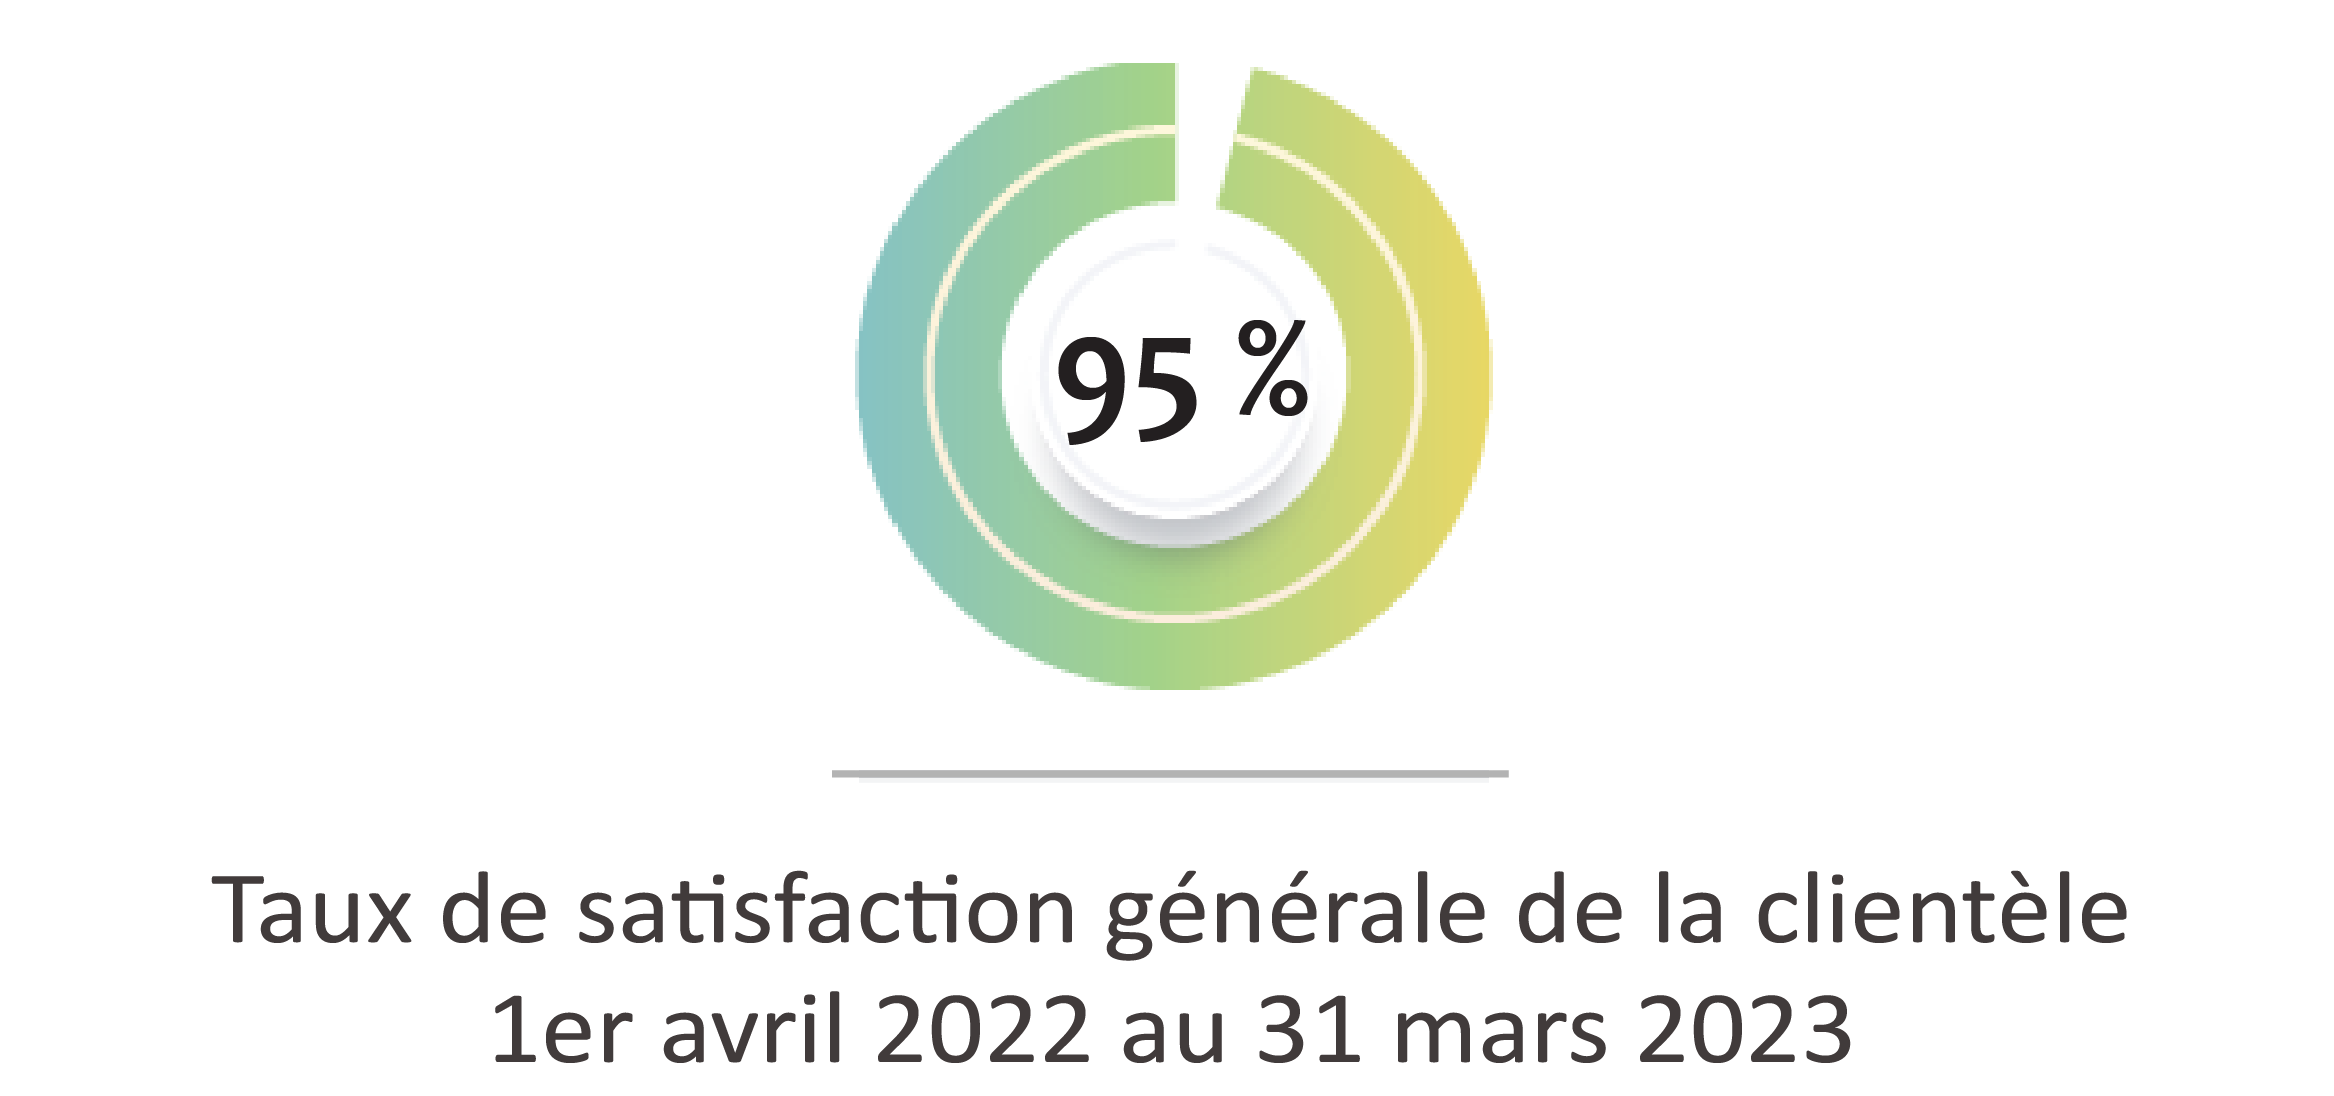 Taux de satisfaction générale de la clientèle – 1er avril 2022 au 31 mars 2023 : 95 %